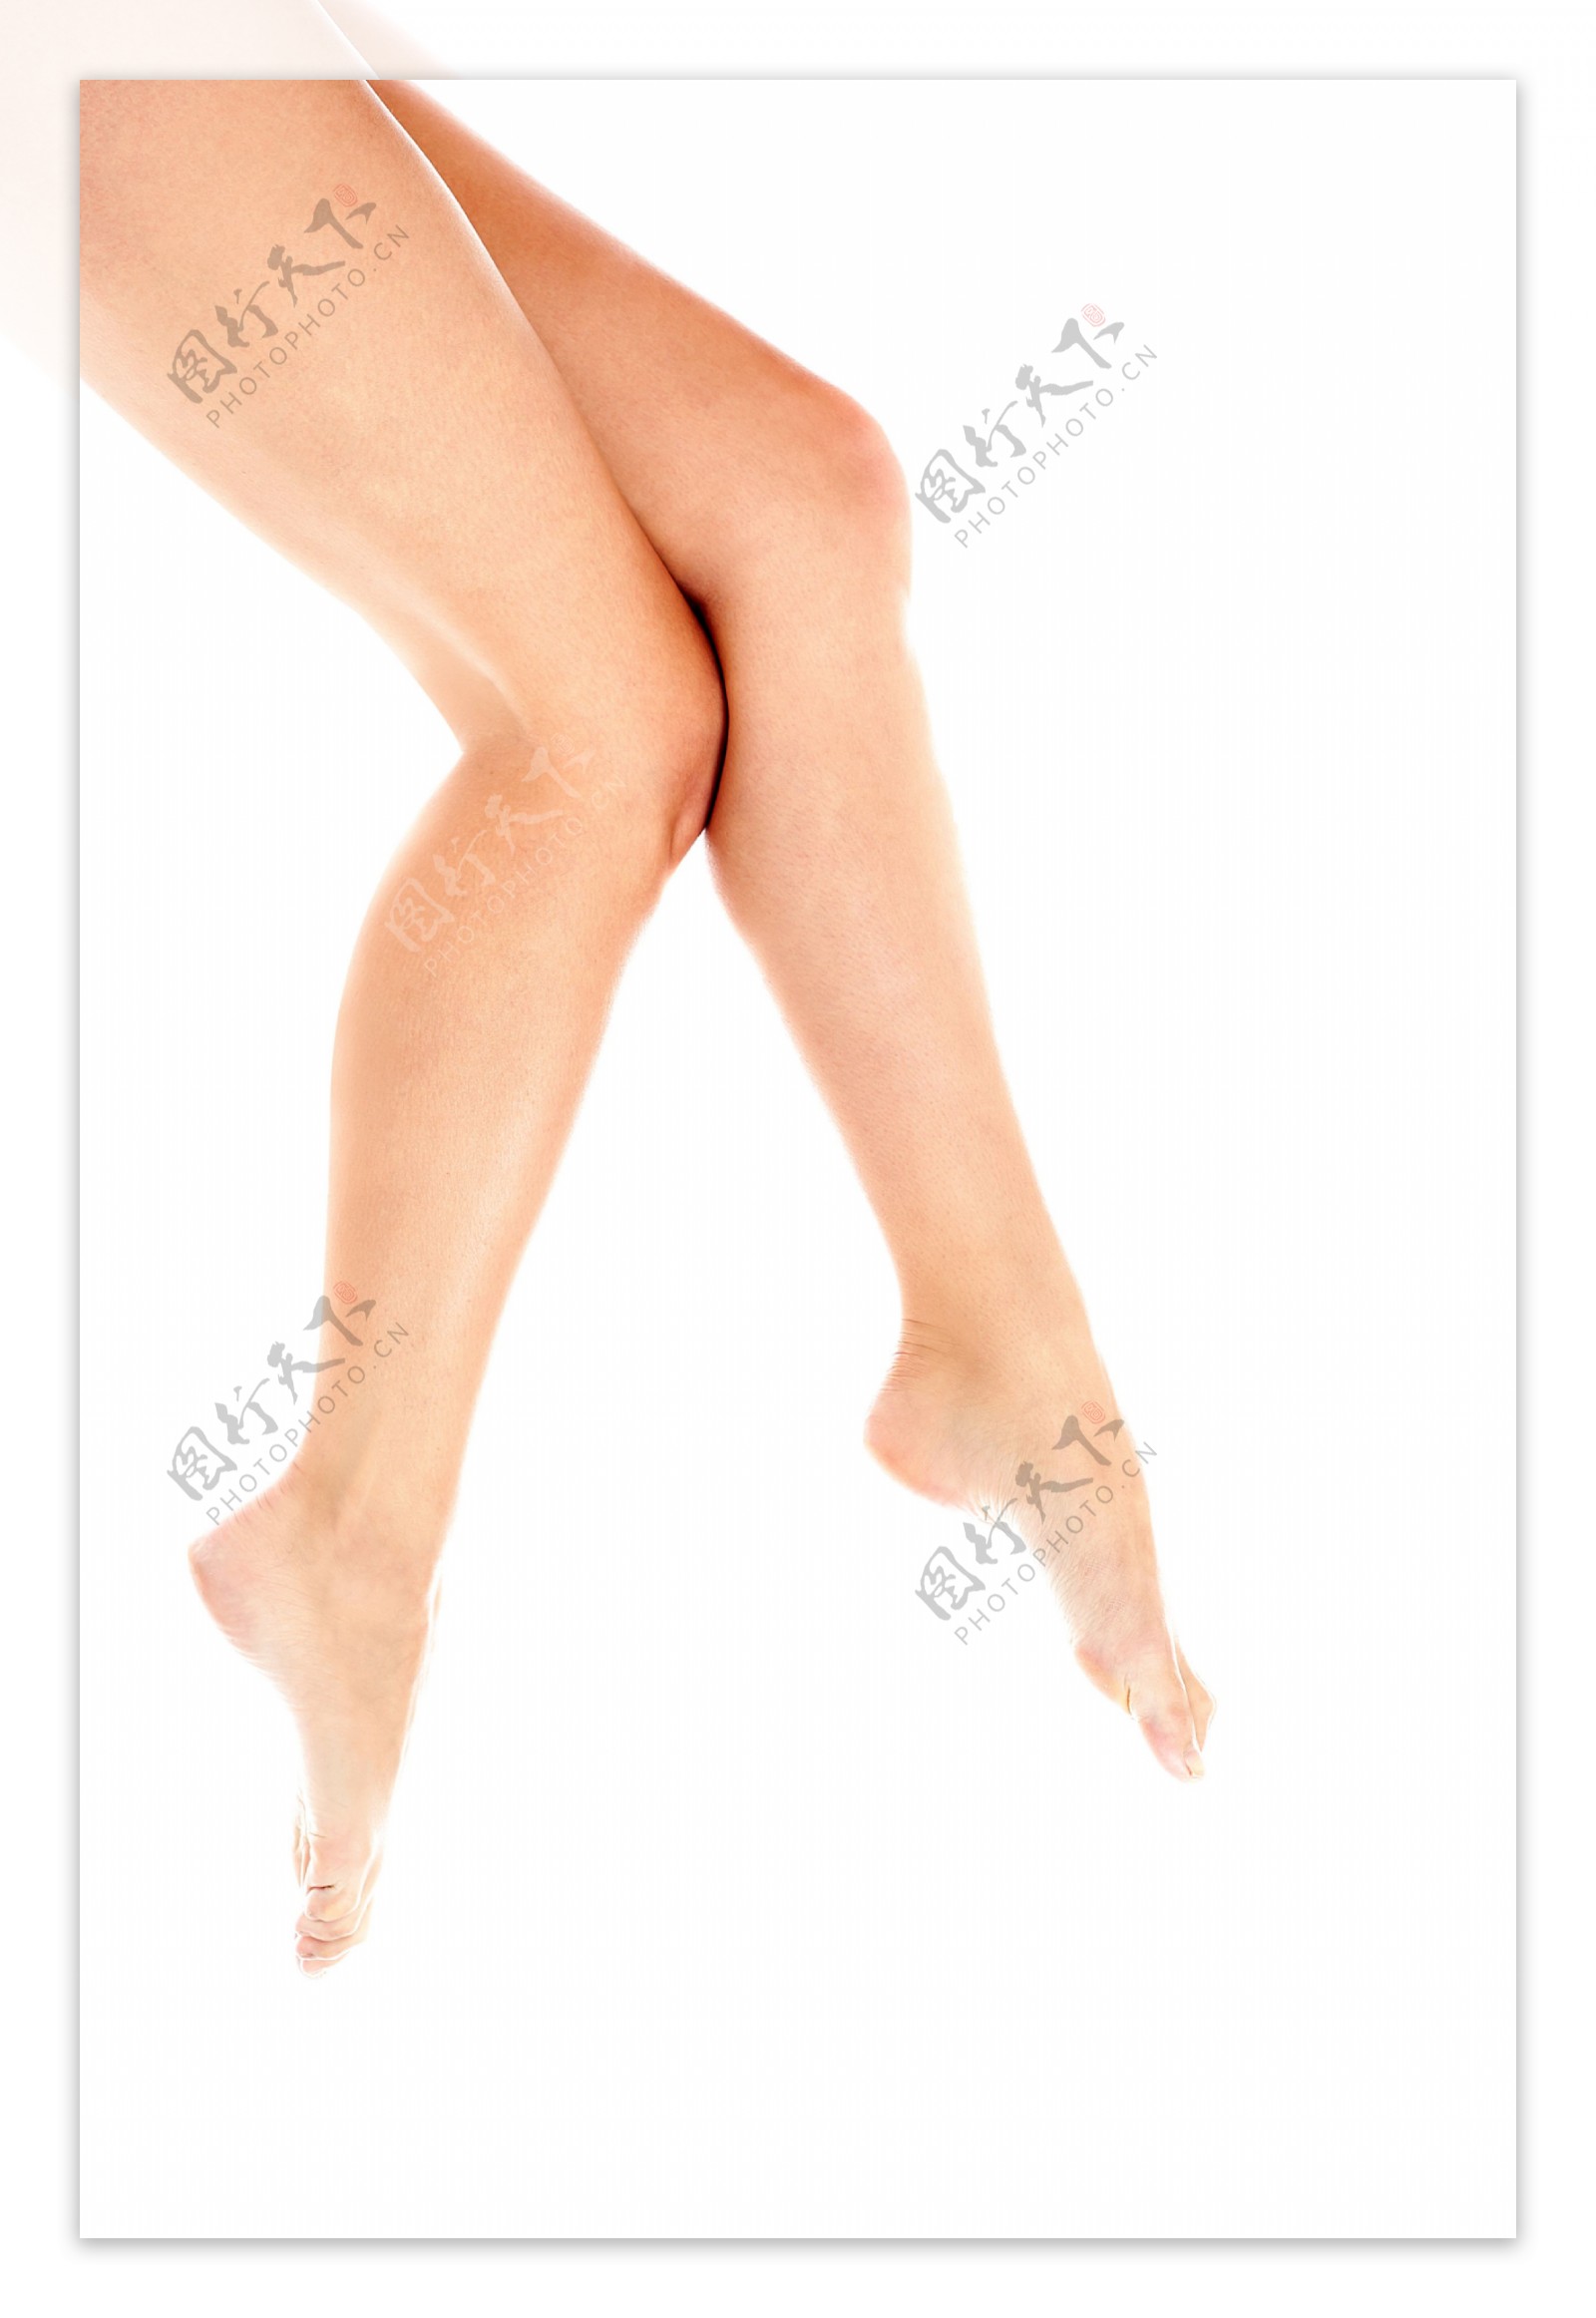 丰满的女人伸展双腿图片-商业图片-正版原创图片下载购买-VEER图片库